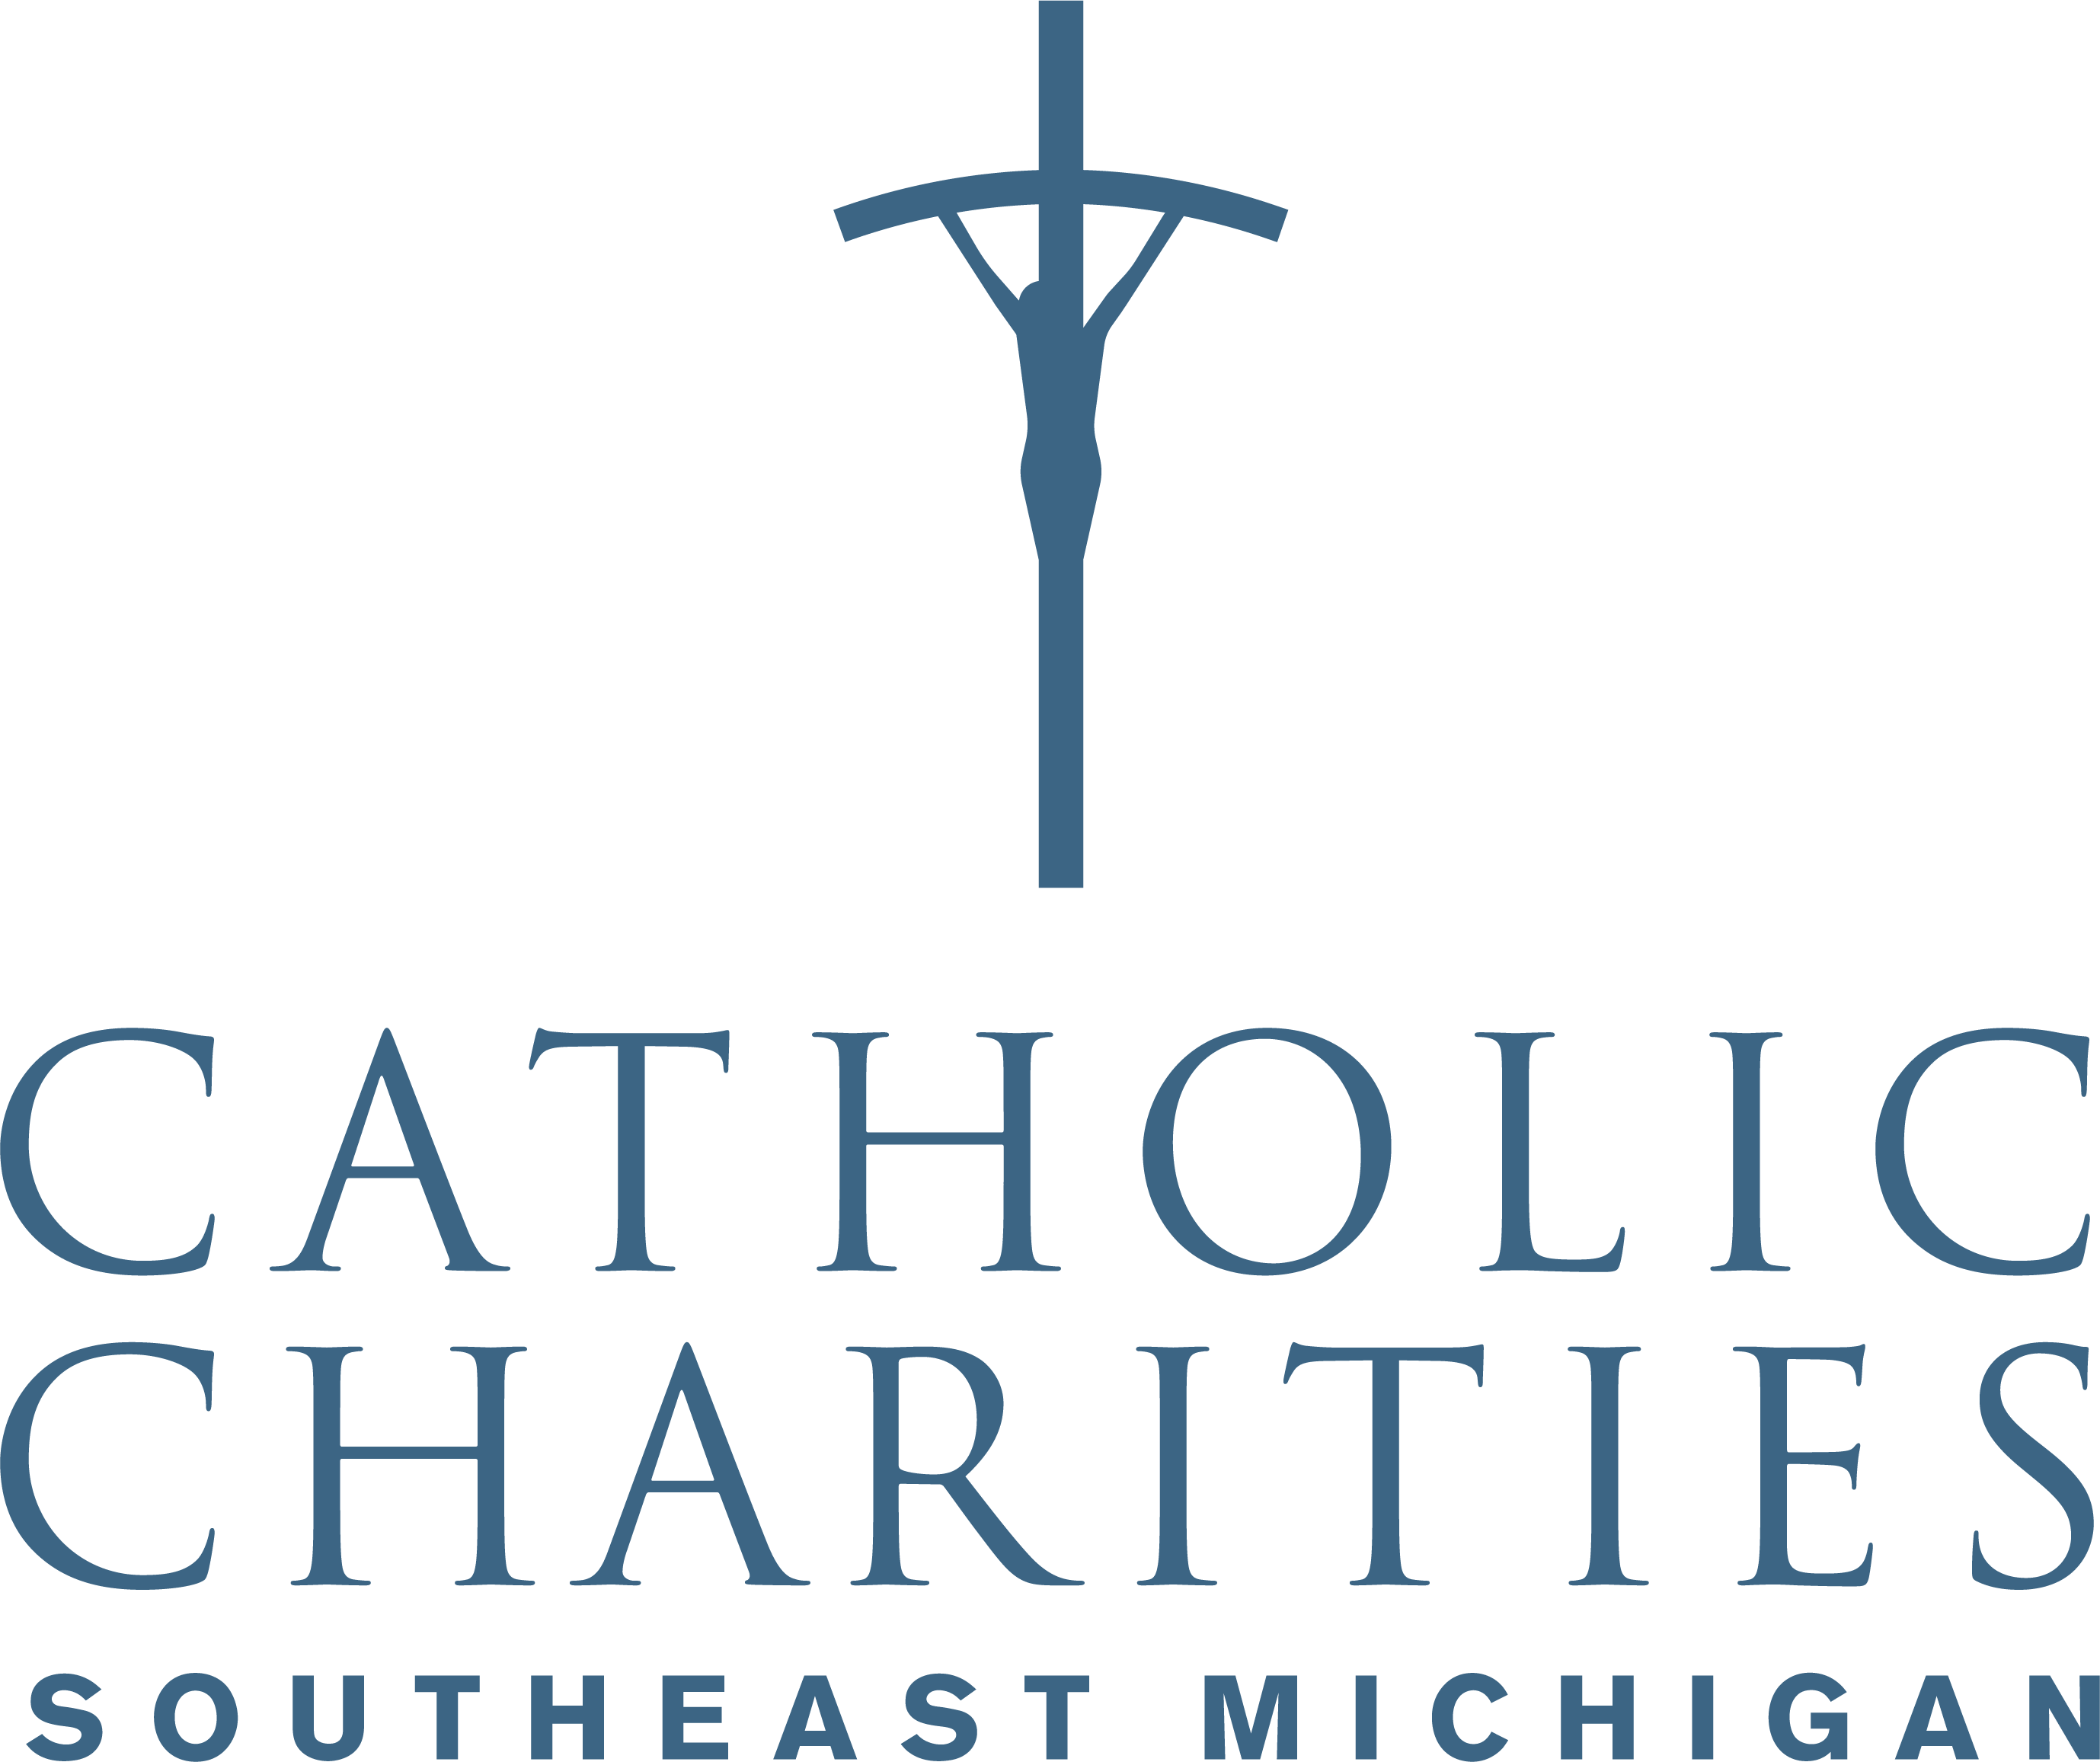 Catholic Charities of Southeast Michigan